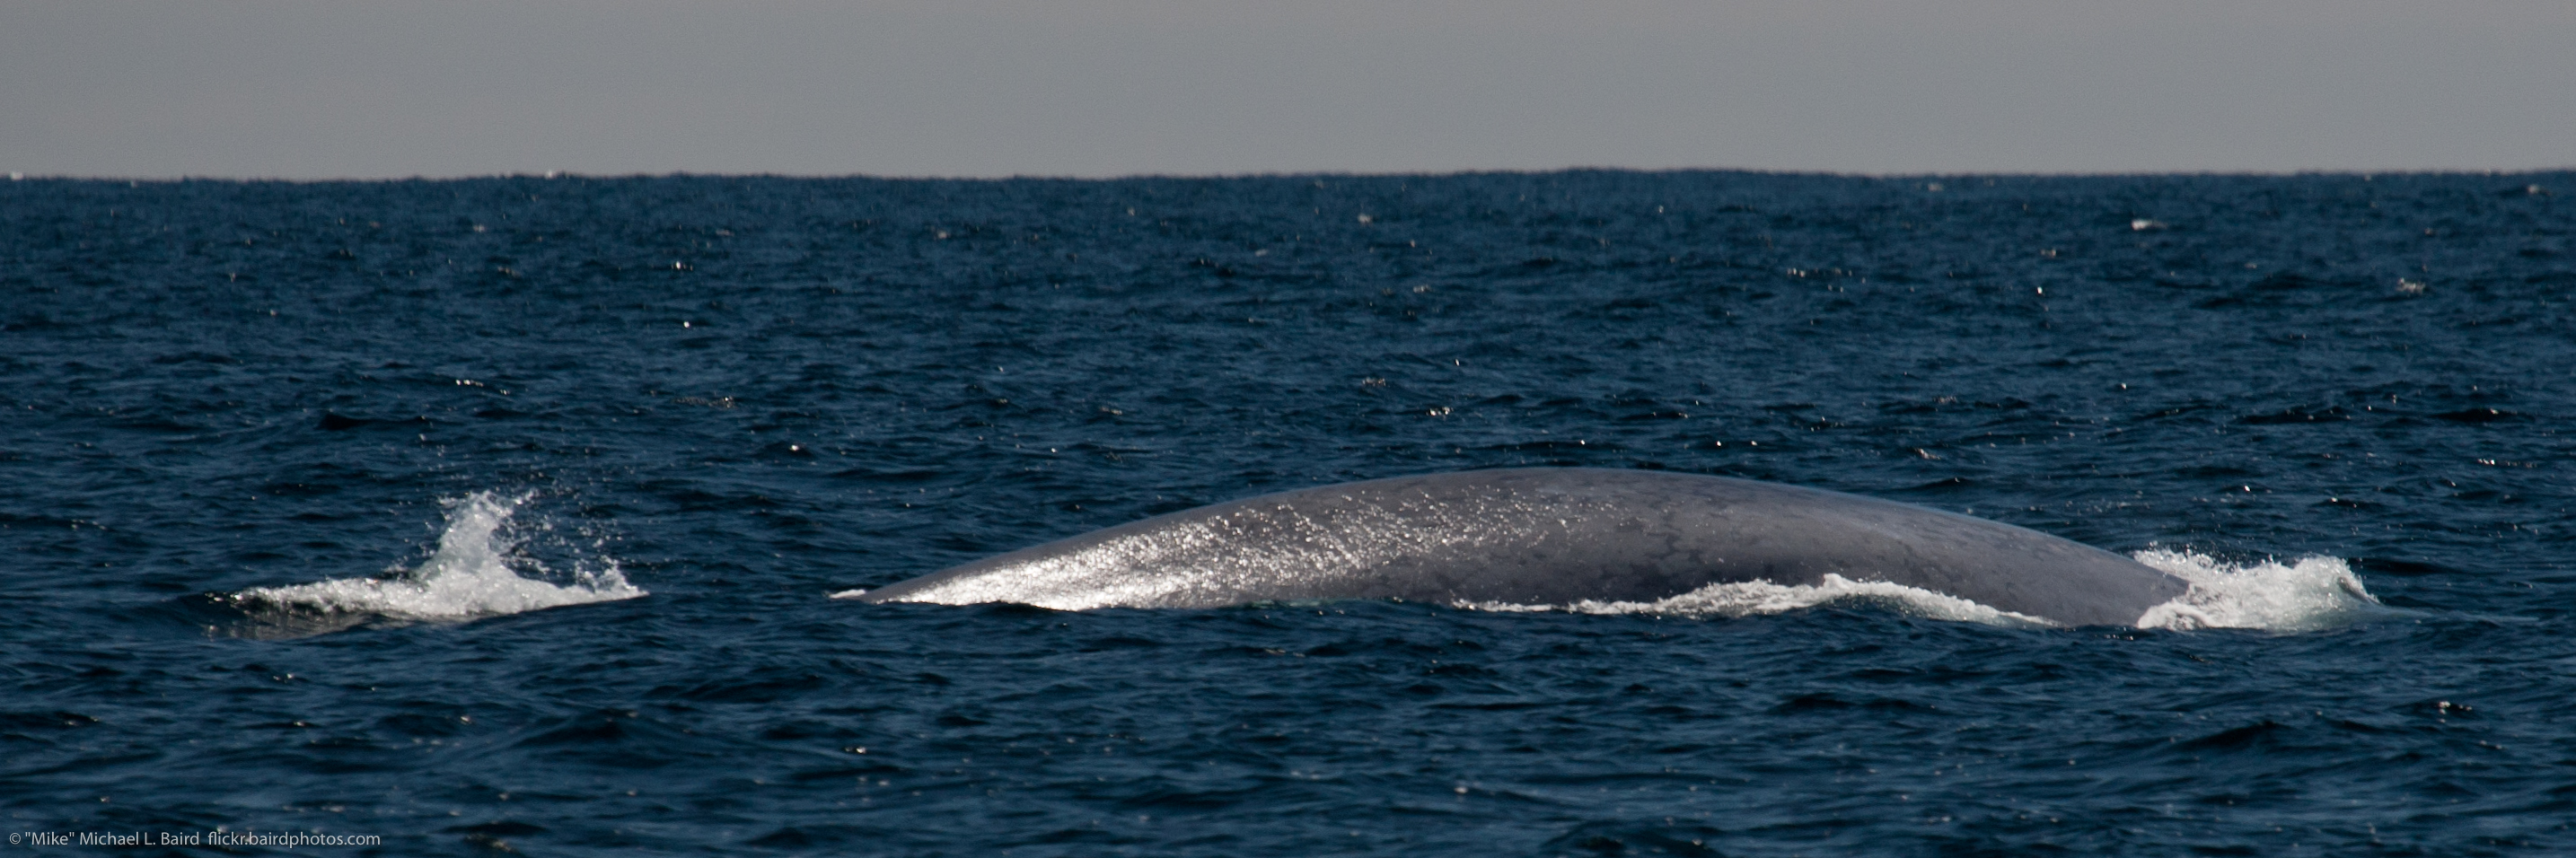 La parte posterior de una ballena azul sobresale del océano.